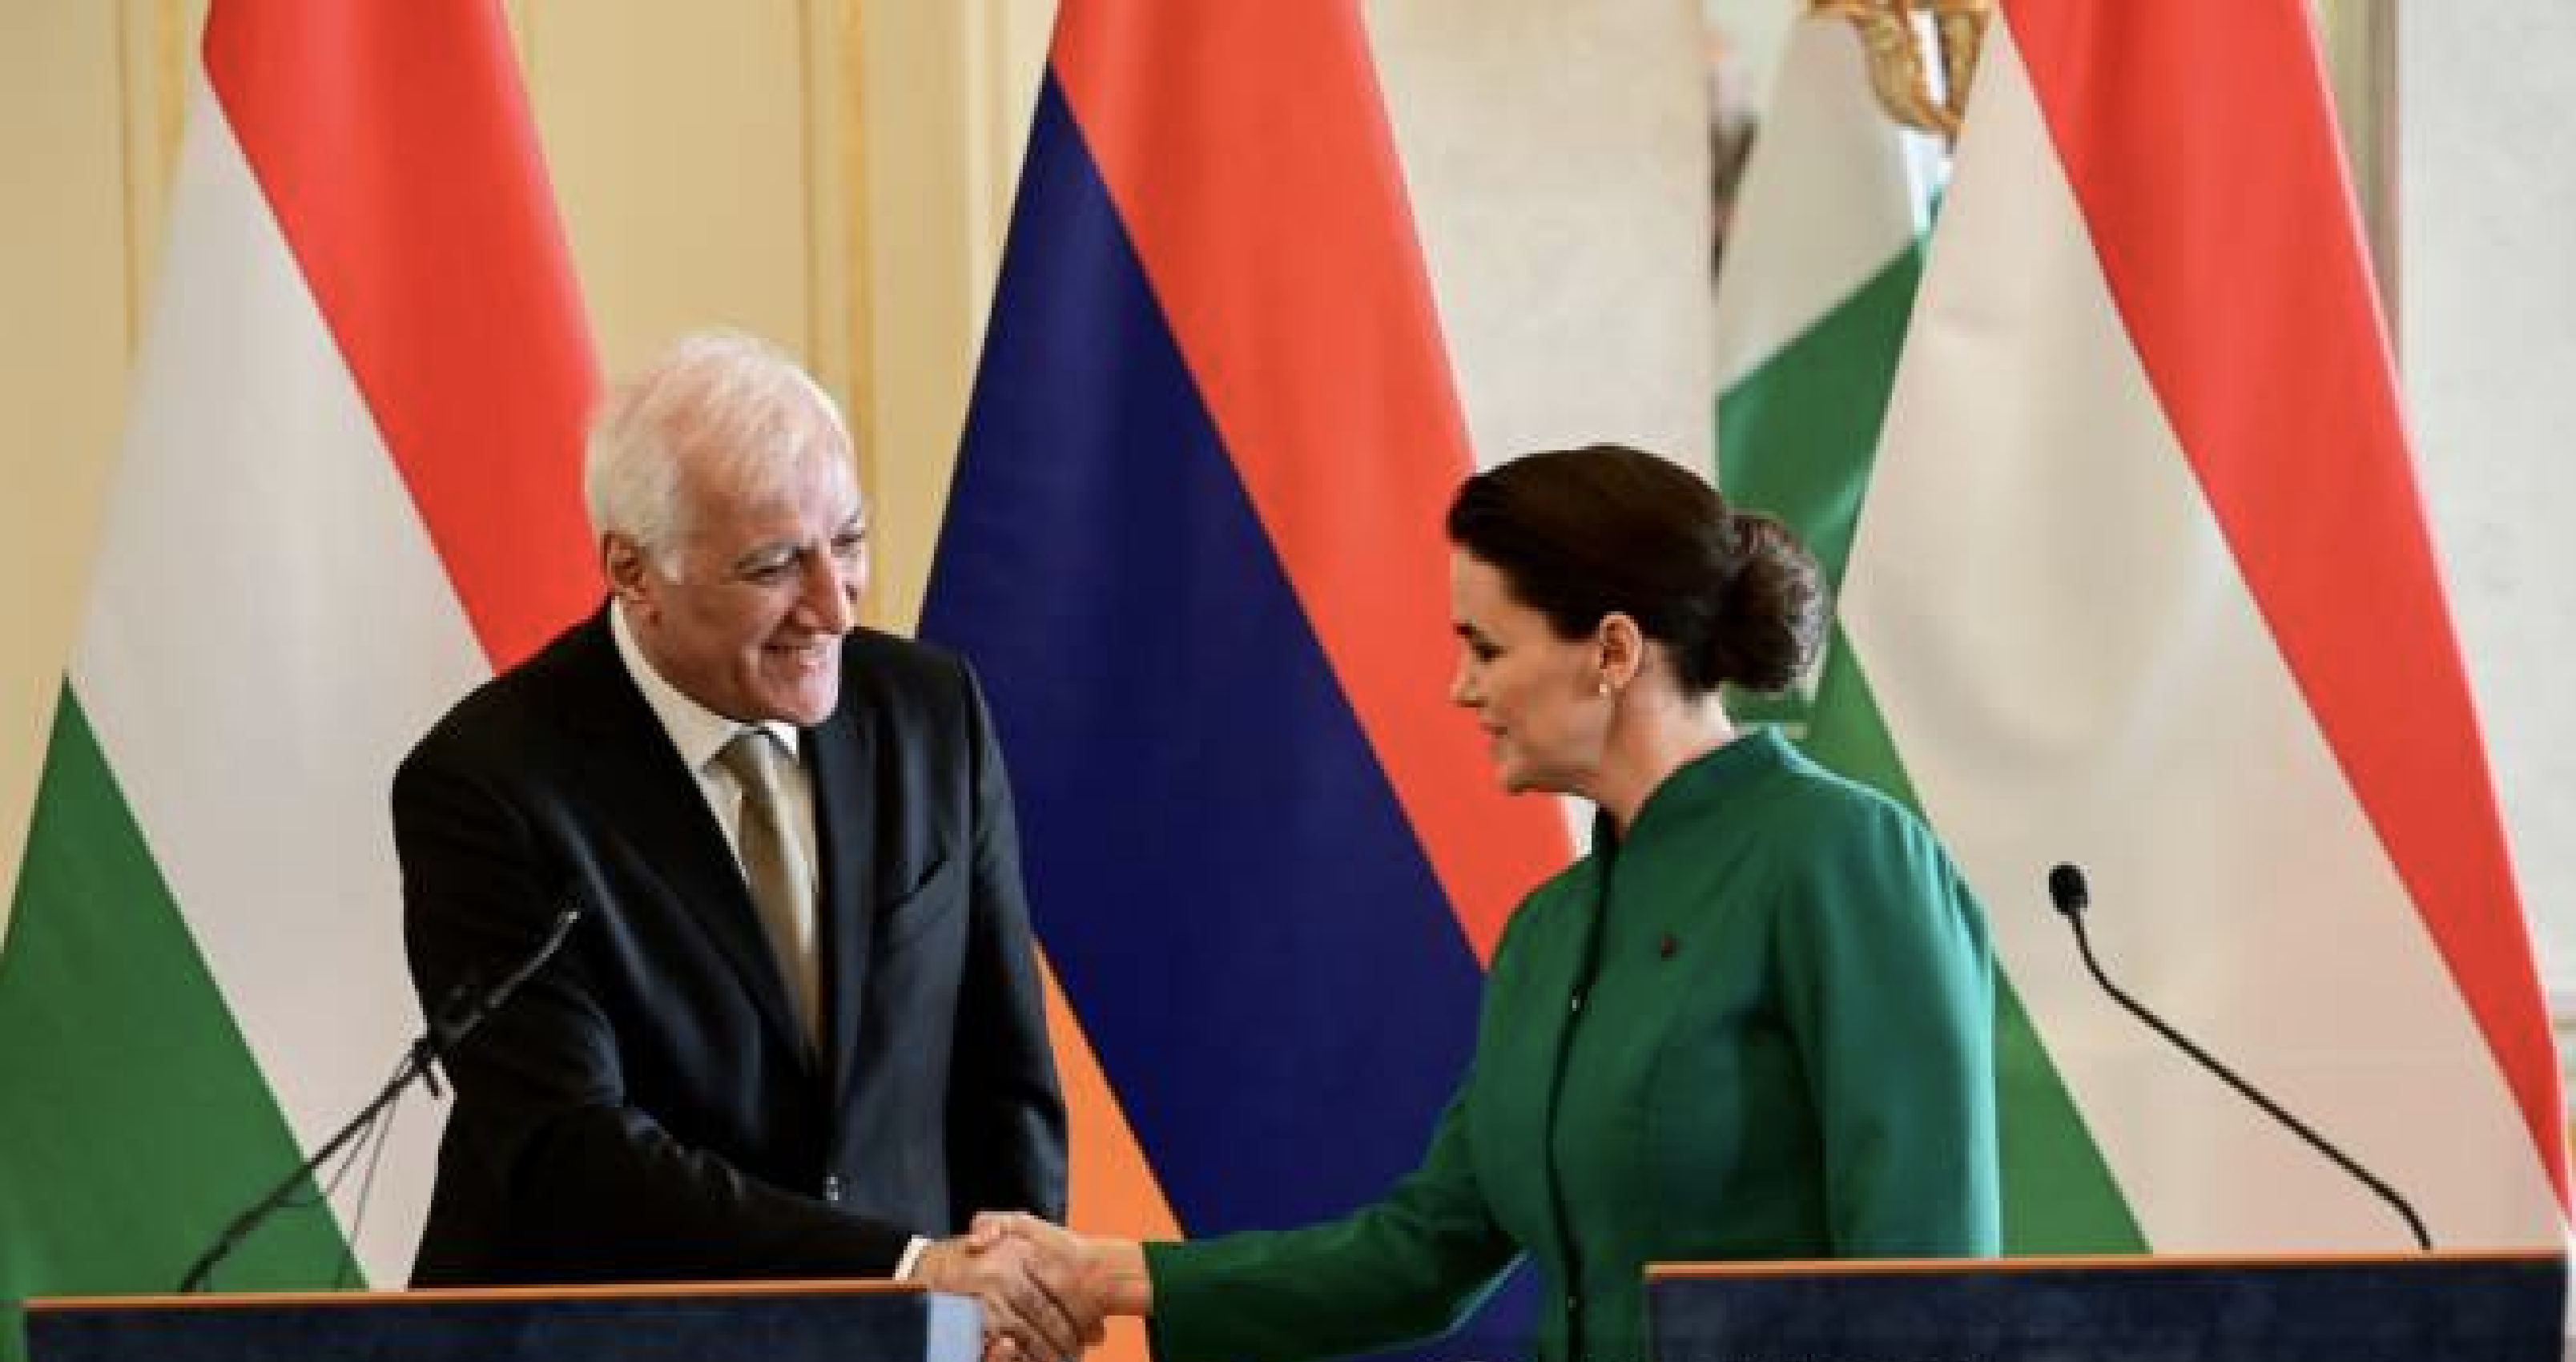 Örményország elnökének magyarországi látogatása